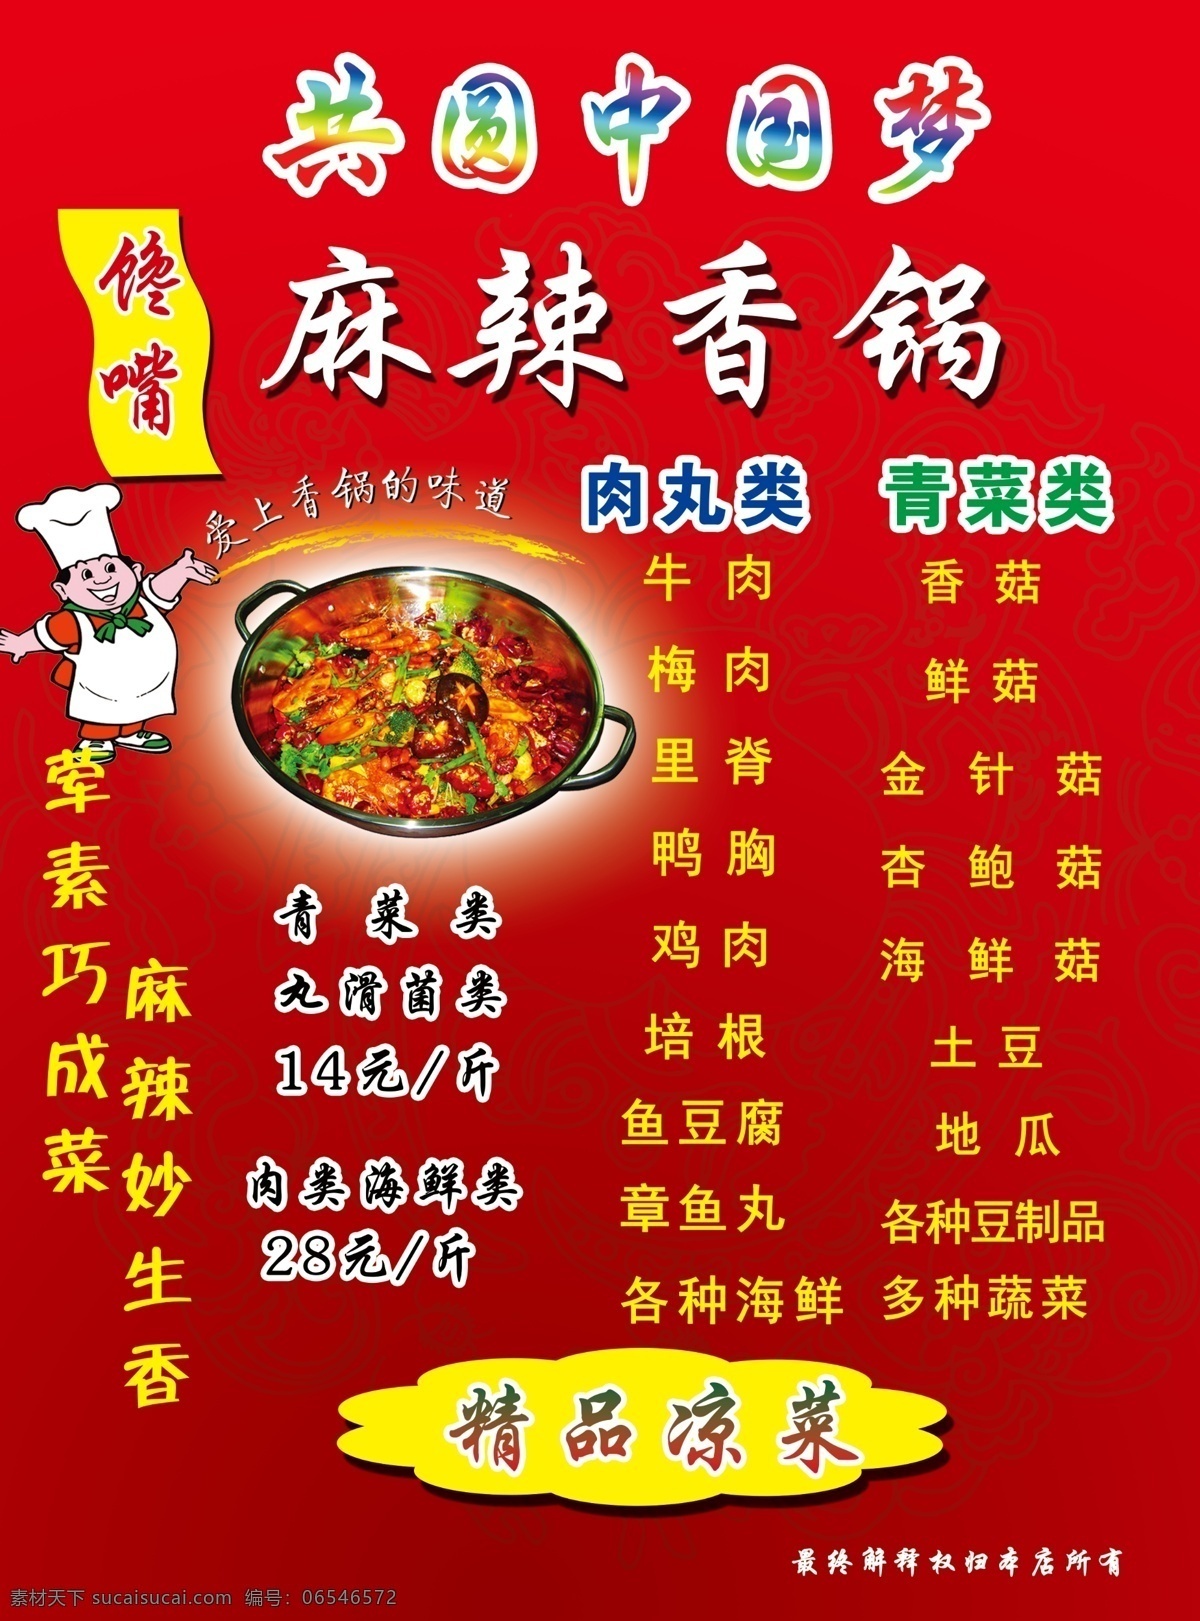 麻辣香锅 馋嘴 中国梦 厨师卡通 共圆中国梦 红色